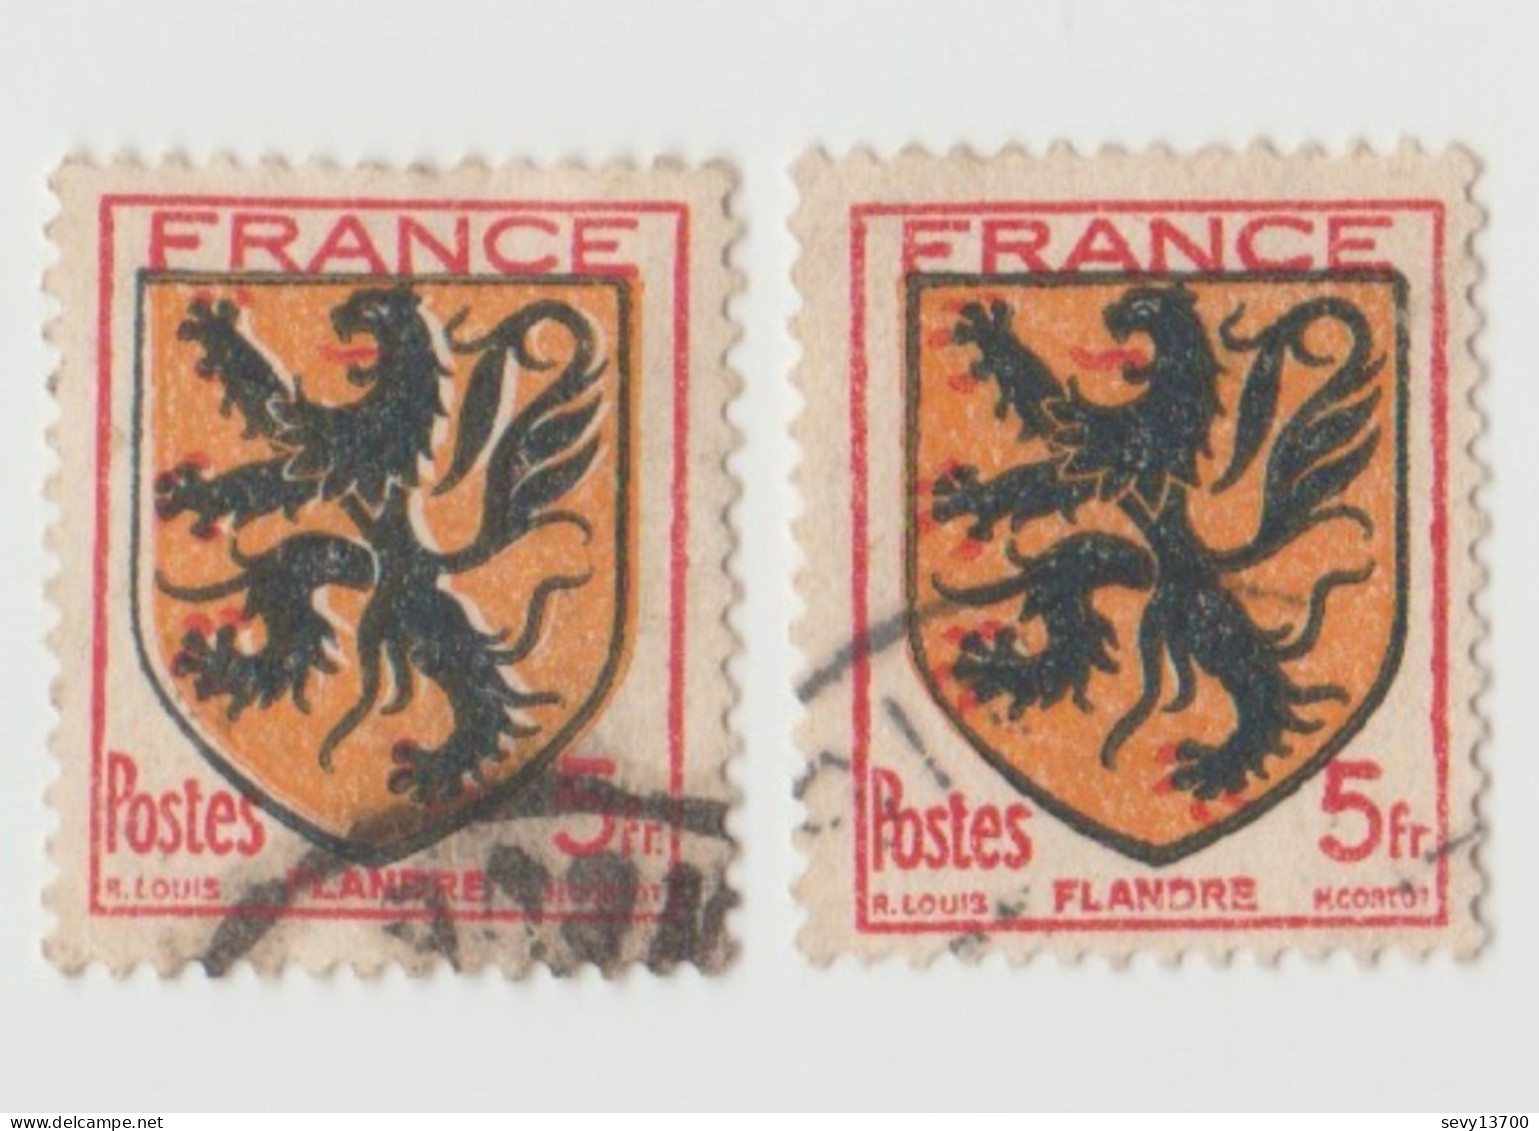 2 Timbres France 1942  YT N° 602 Armoiries Flandre. Variété Griffes Absentes Lion Contours Blancs Langue Plus Petite - Usati